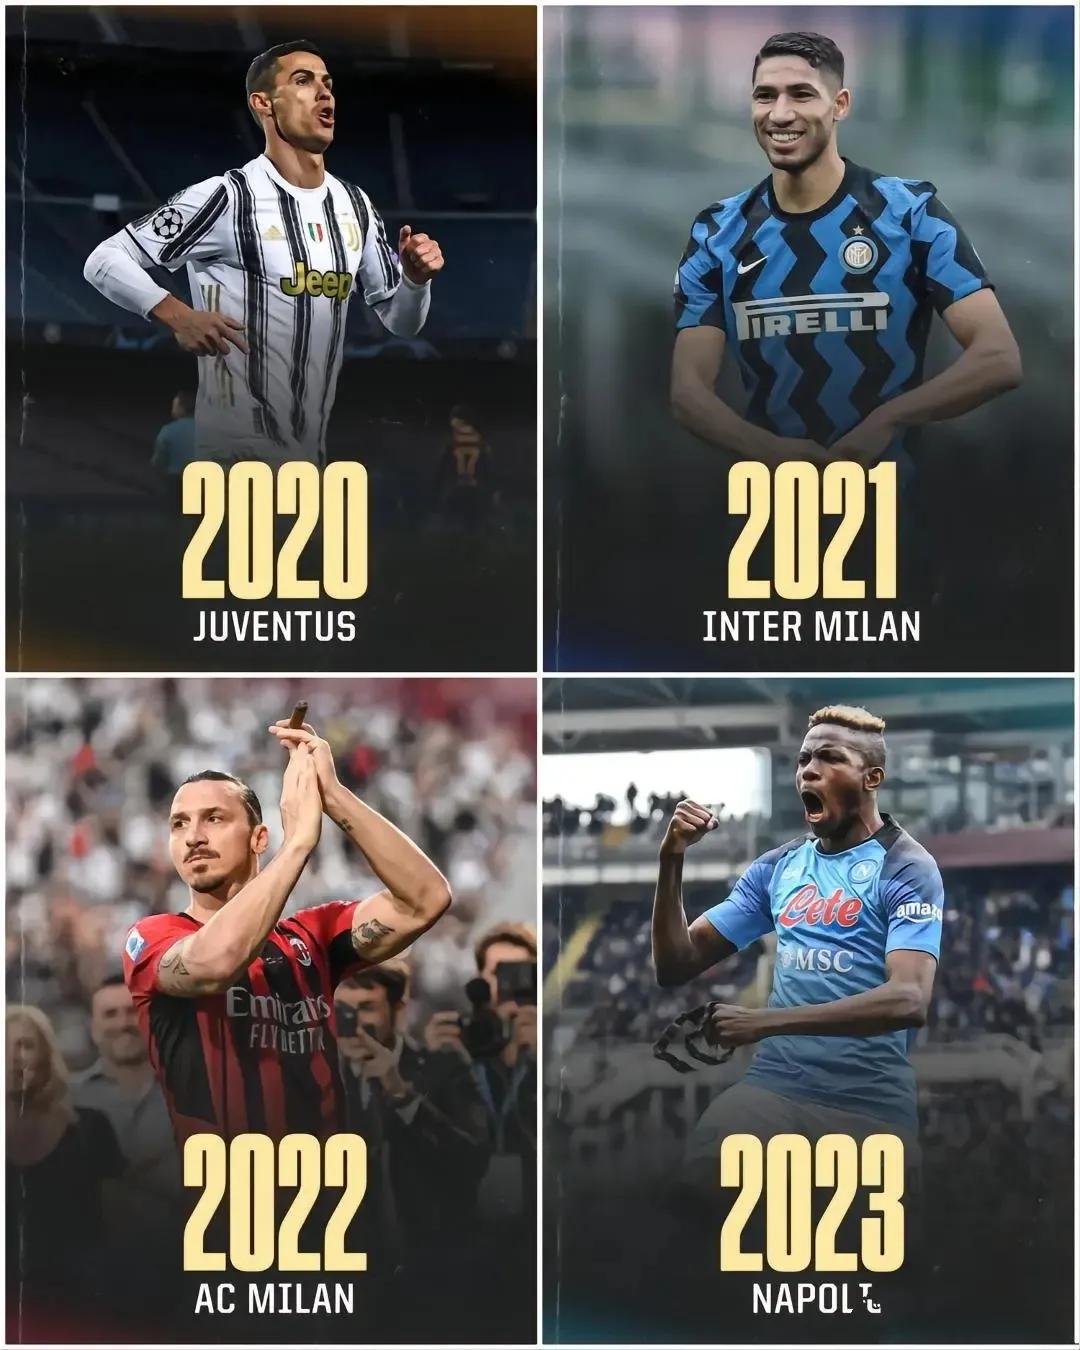 现在意甲联赛每年换一个冠军，明年会是罗马双雄吗？

2020年冠军尤文图斯。

(1)